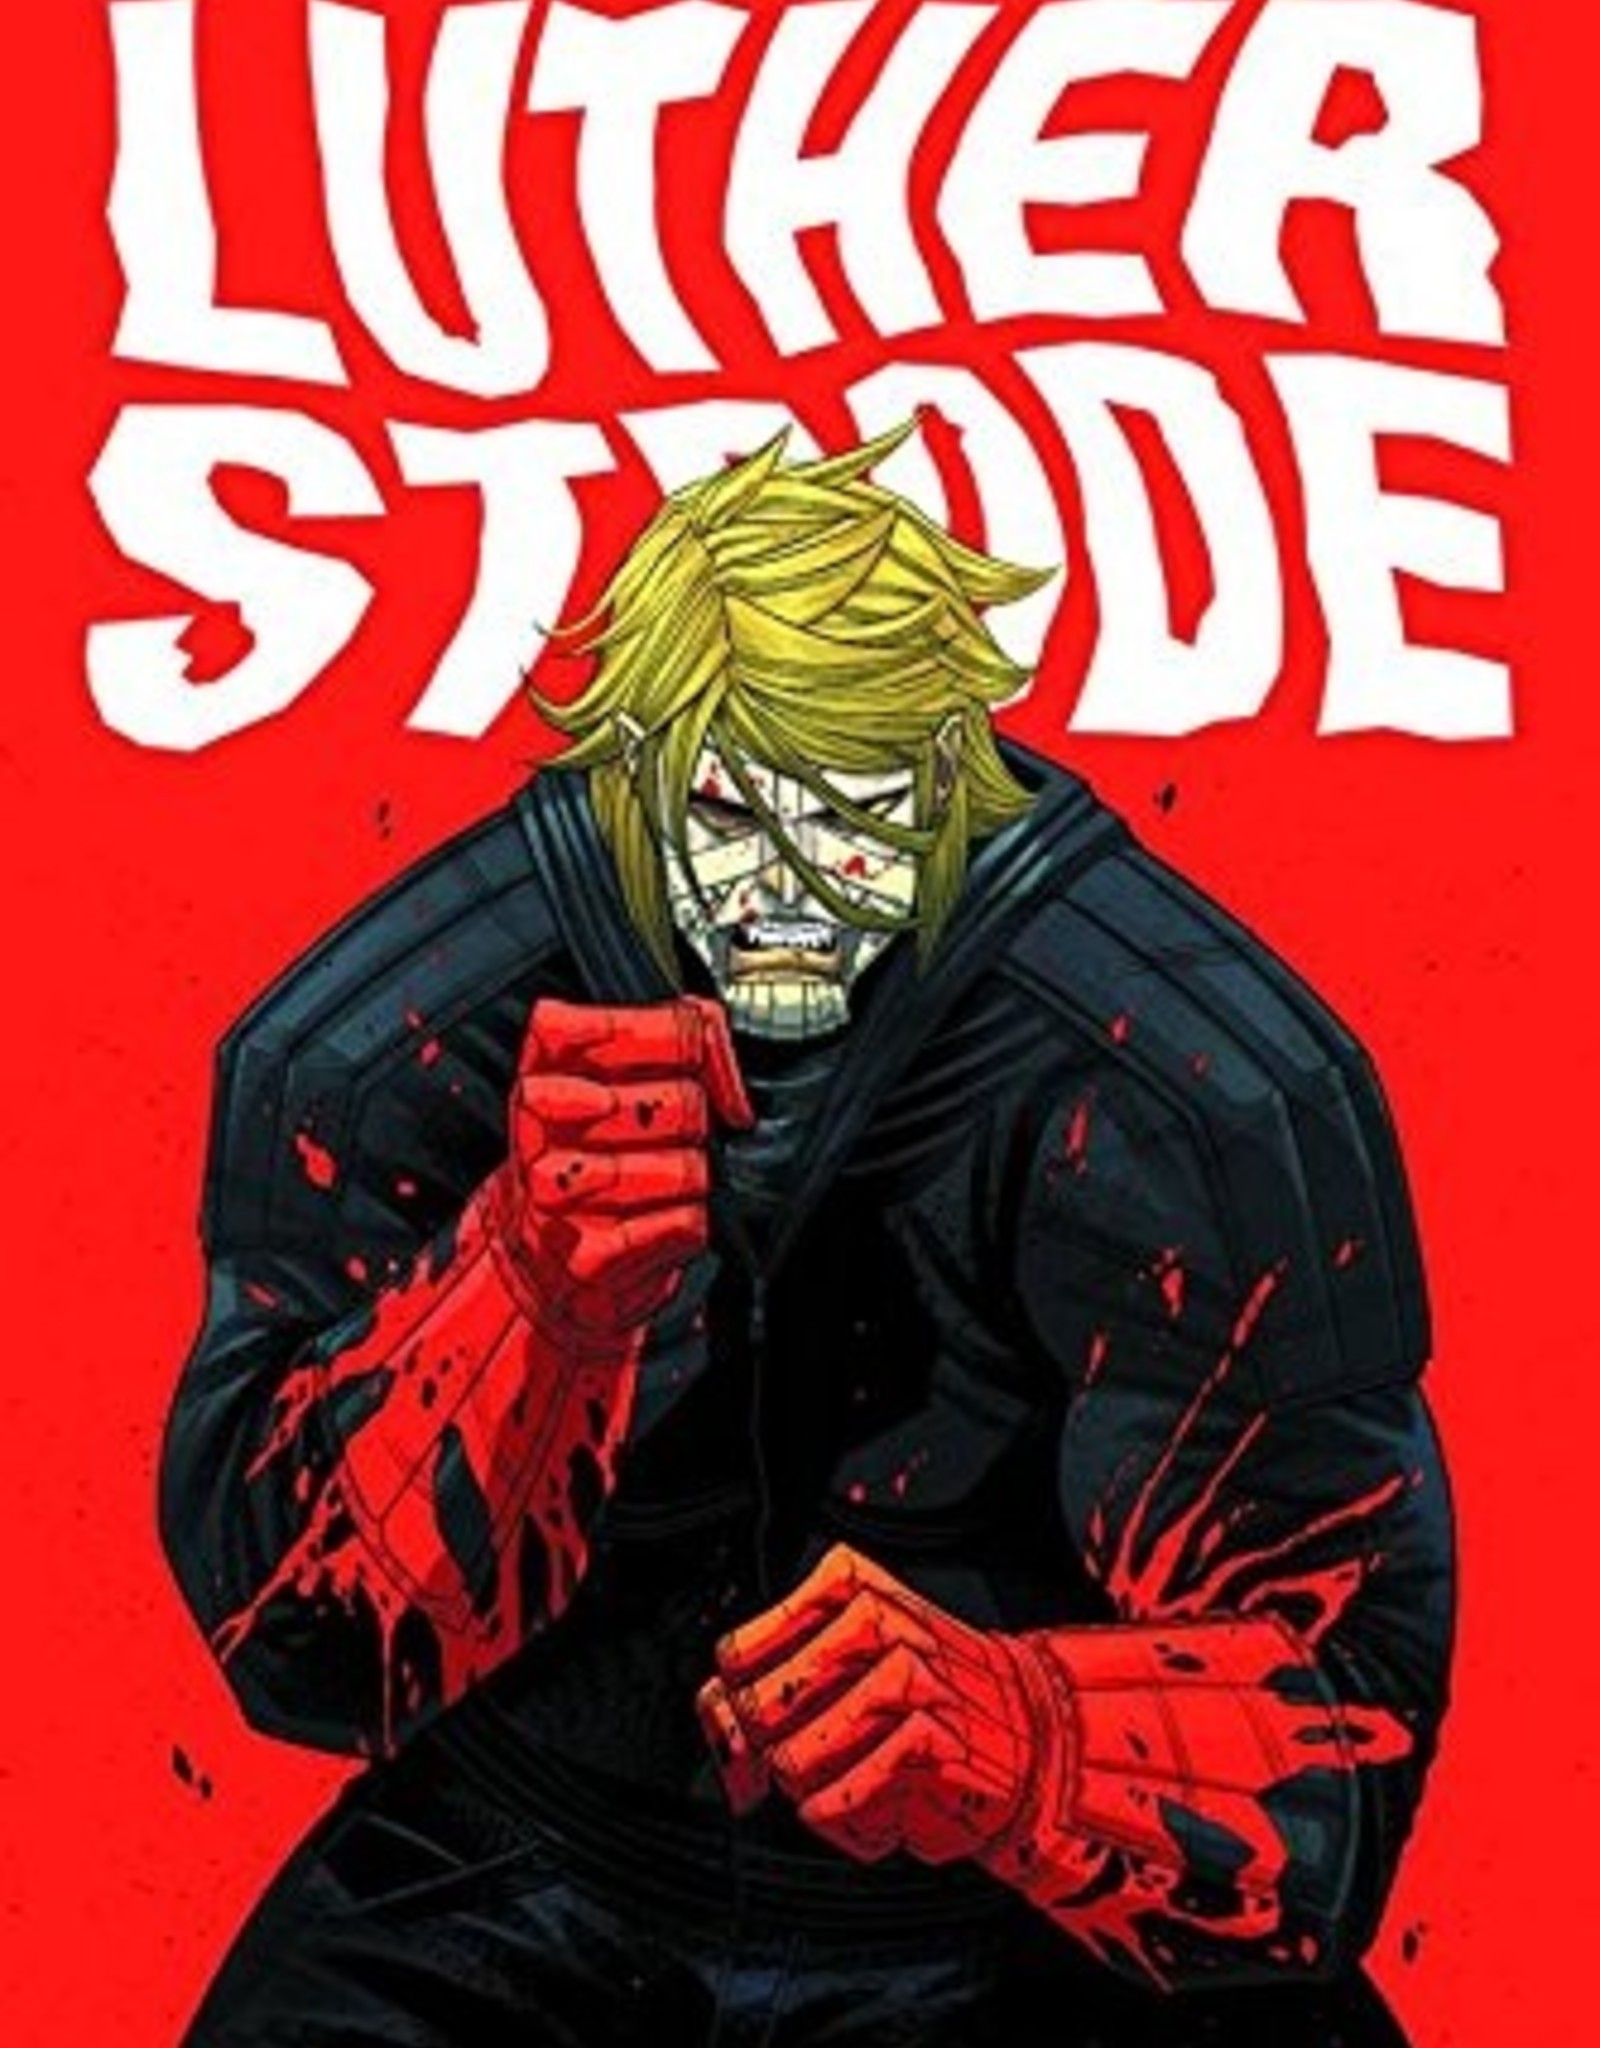 Image Comics Strange Talent of Luther Strode